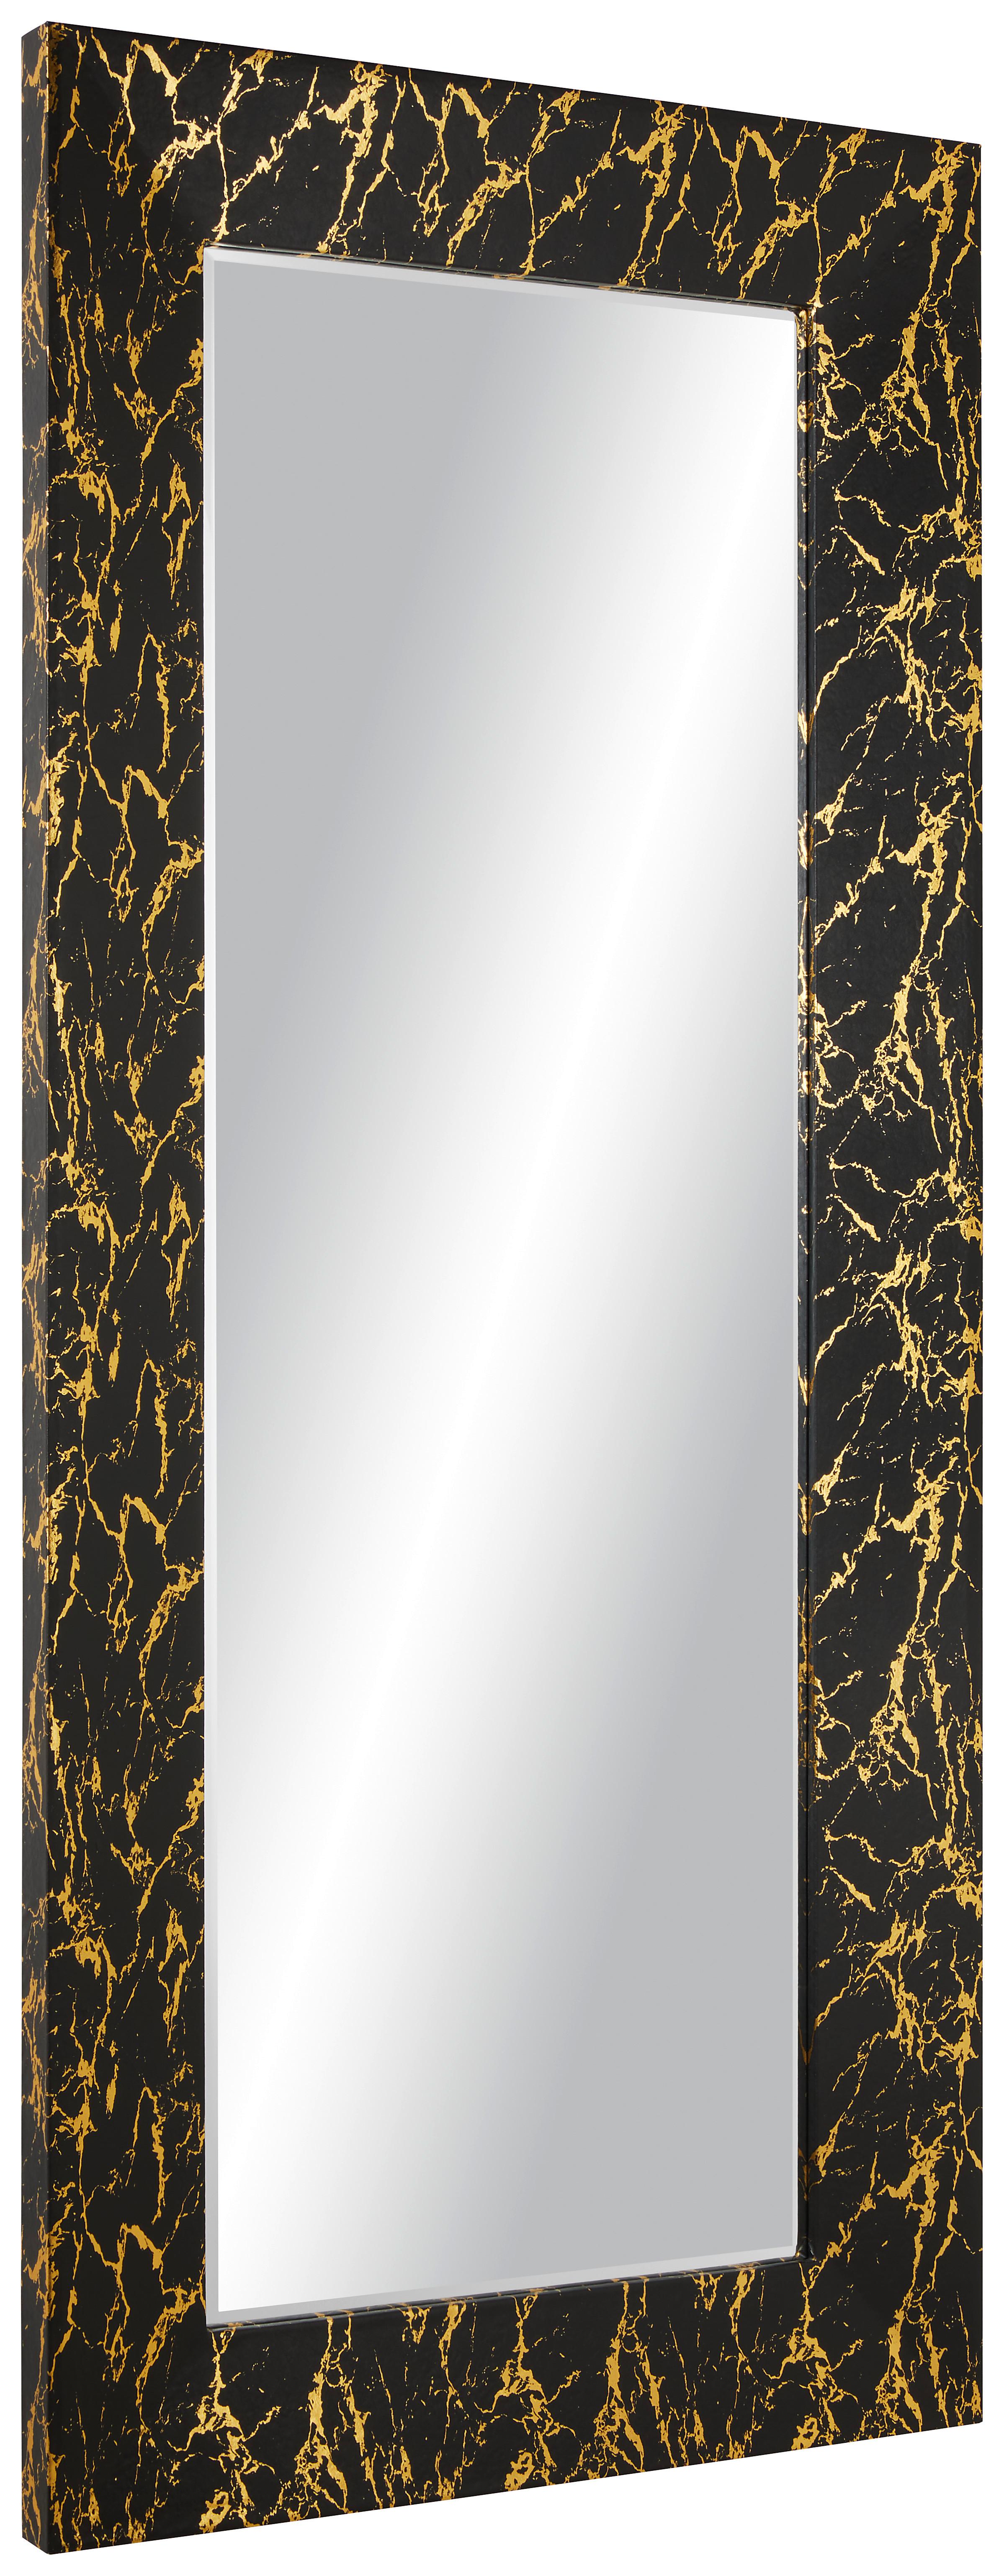 Stensko Ogledalo Glamour - črna/zlata, Moderno, steklo/leseni material (80/180/5cm) - Modern Living